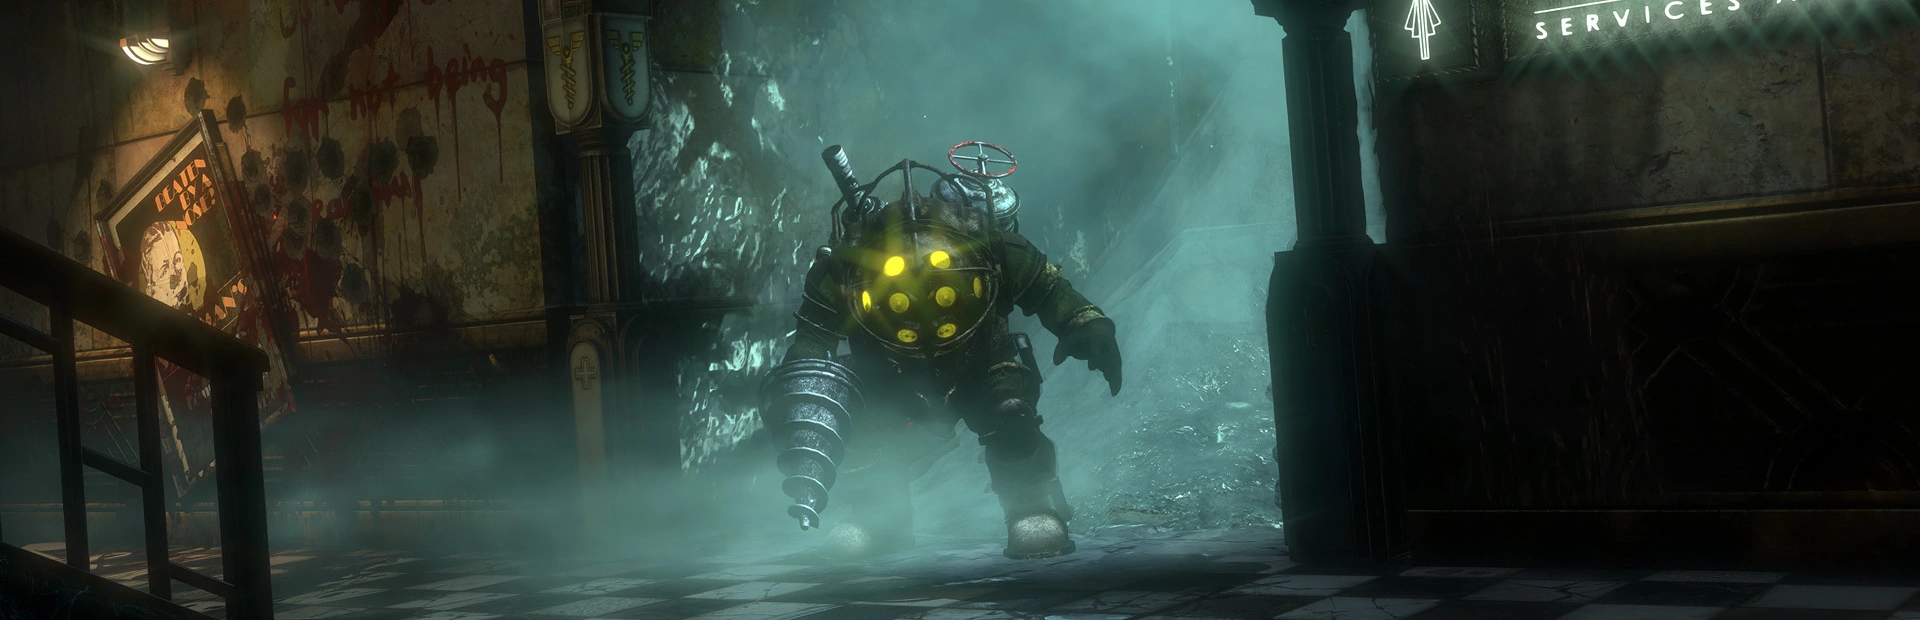 BioShock Remastered.banner3